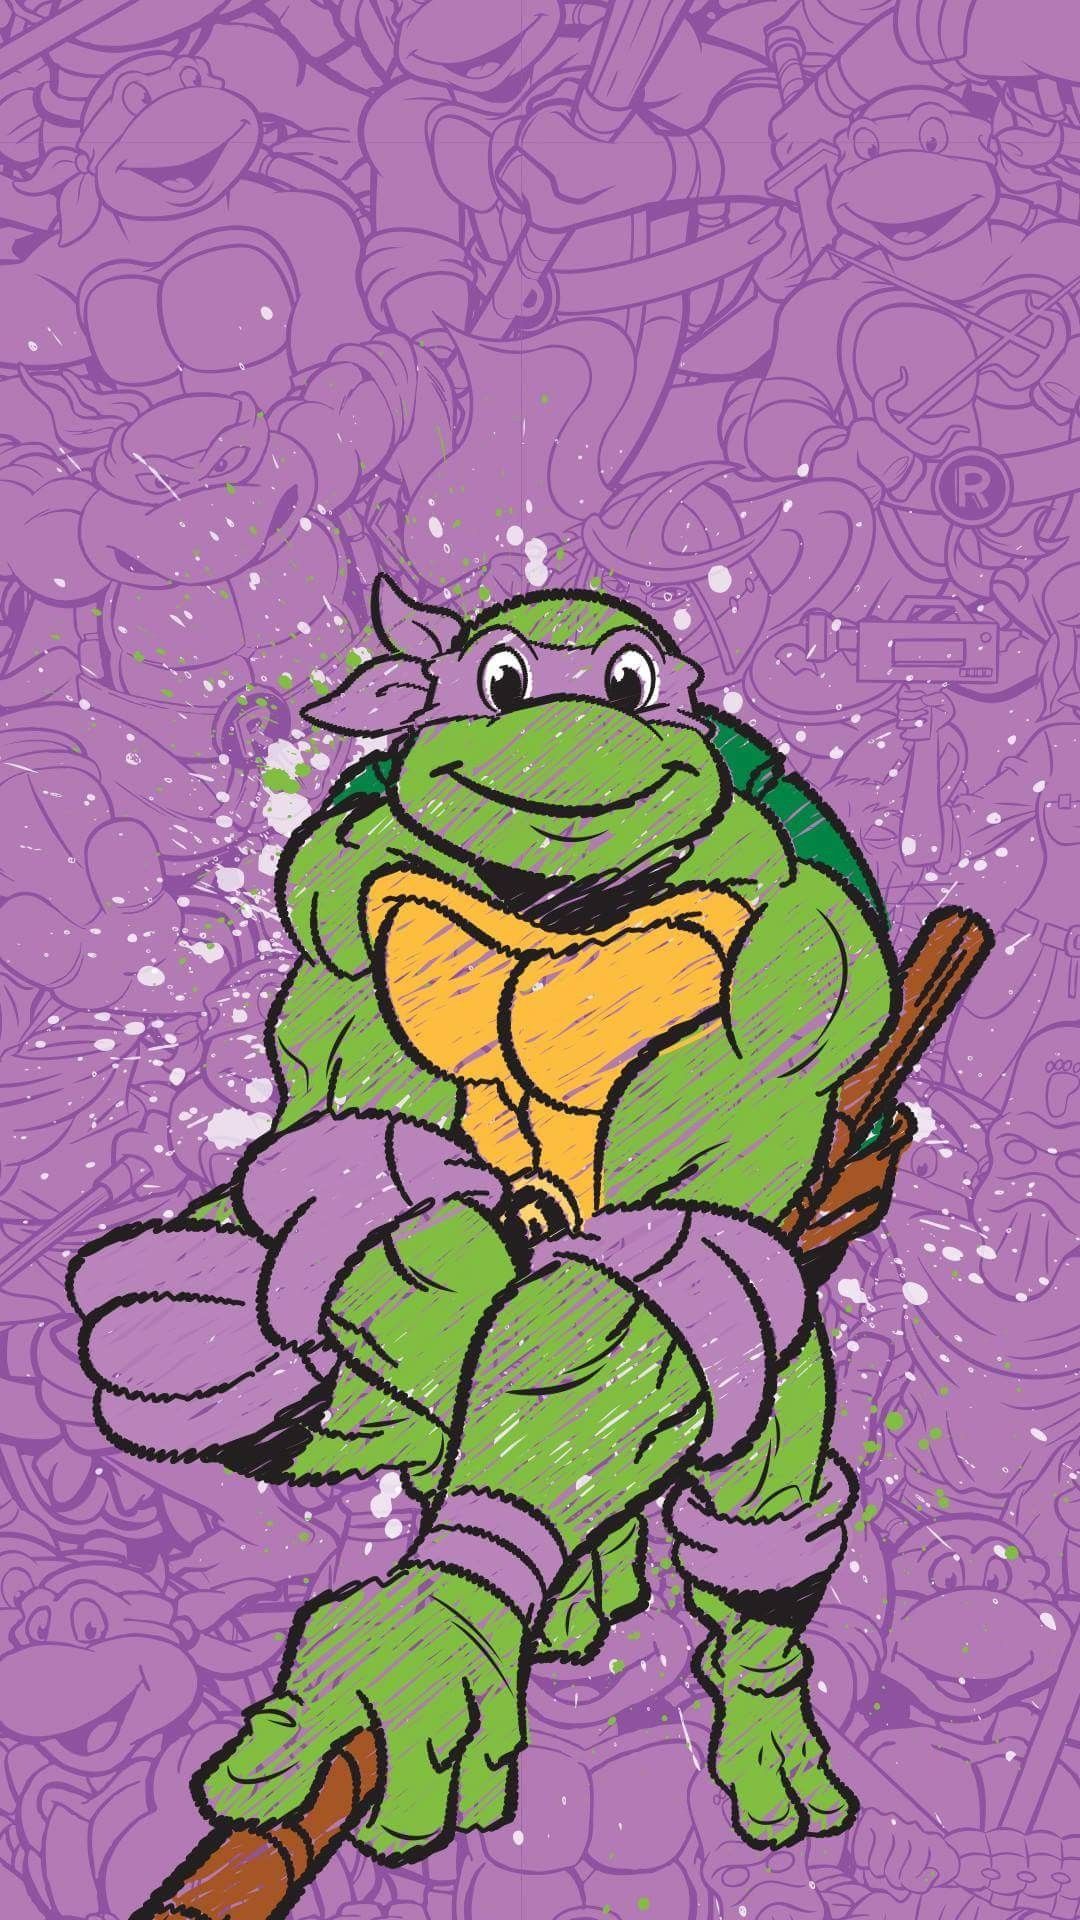 Donatello TMNT. Tmnt wallpaper, Ninja turtles art, Ninja turtles artwork